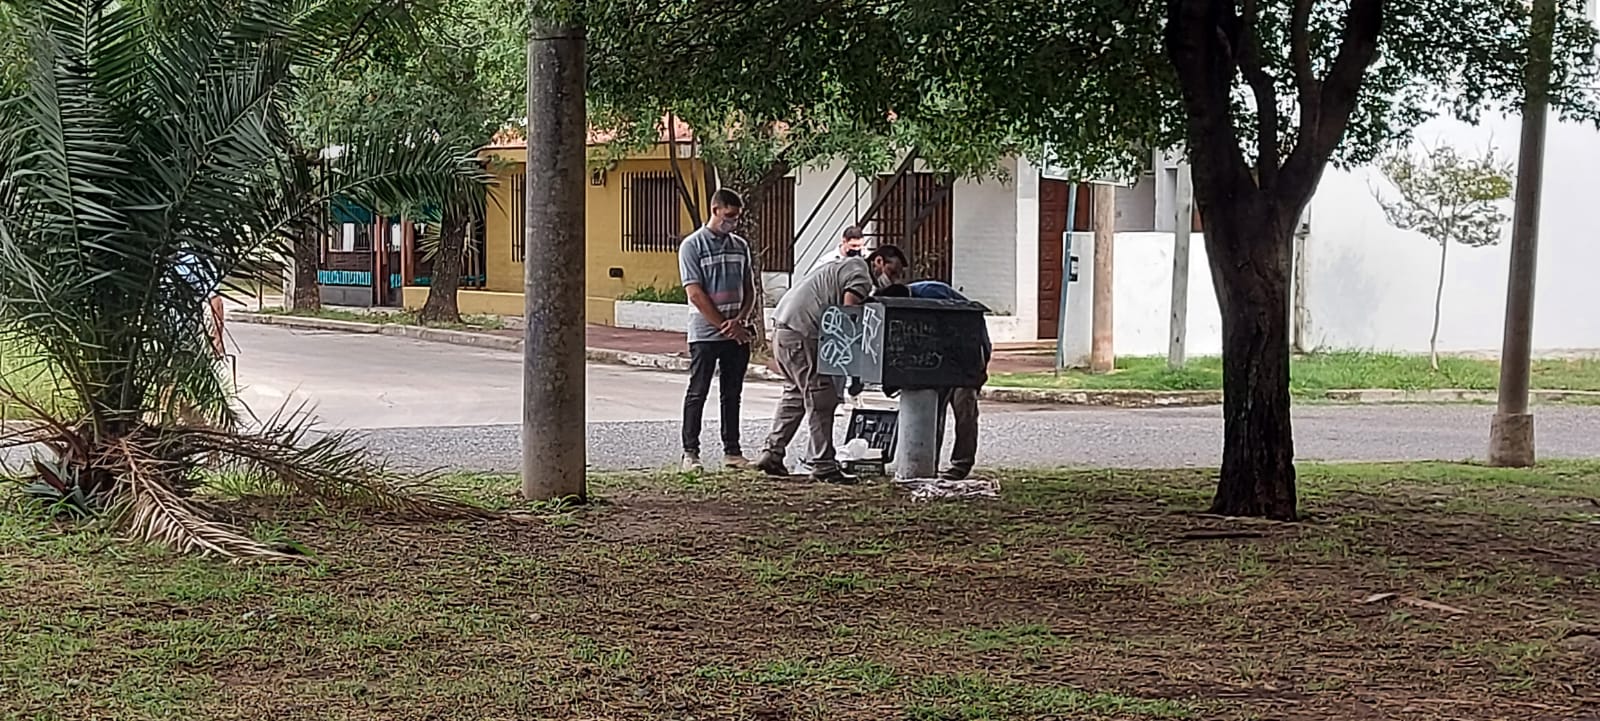 Adolescente electrocutado en Córdoba: el Municipio señala que detectaron “vandalismo” en el poste